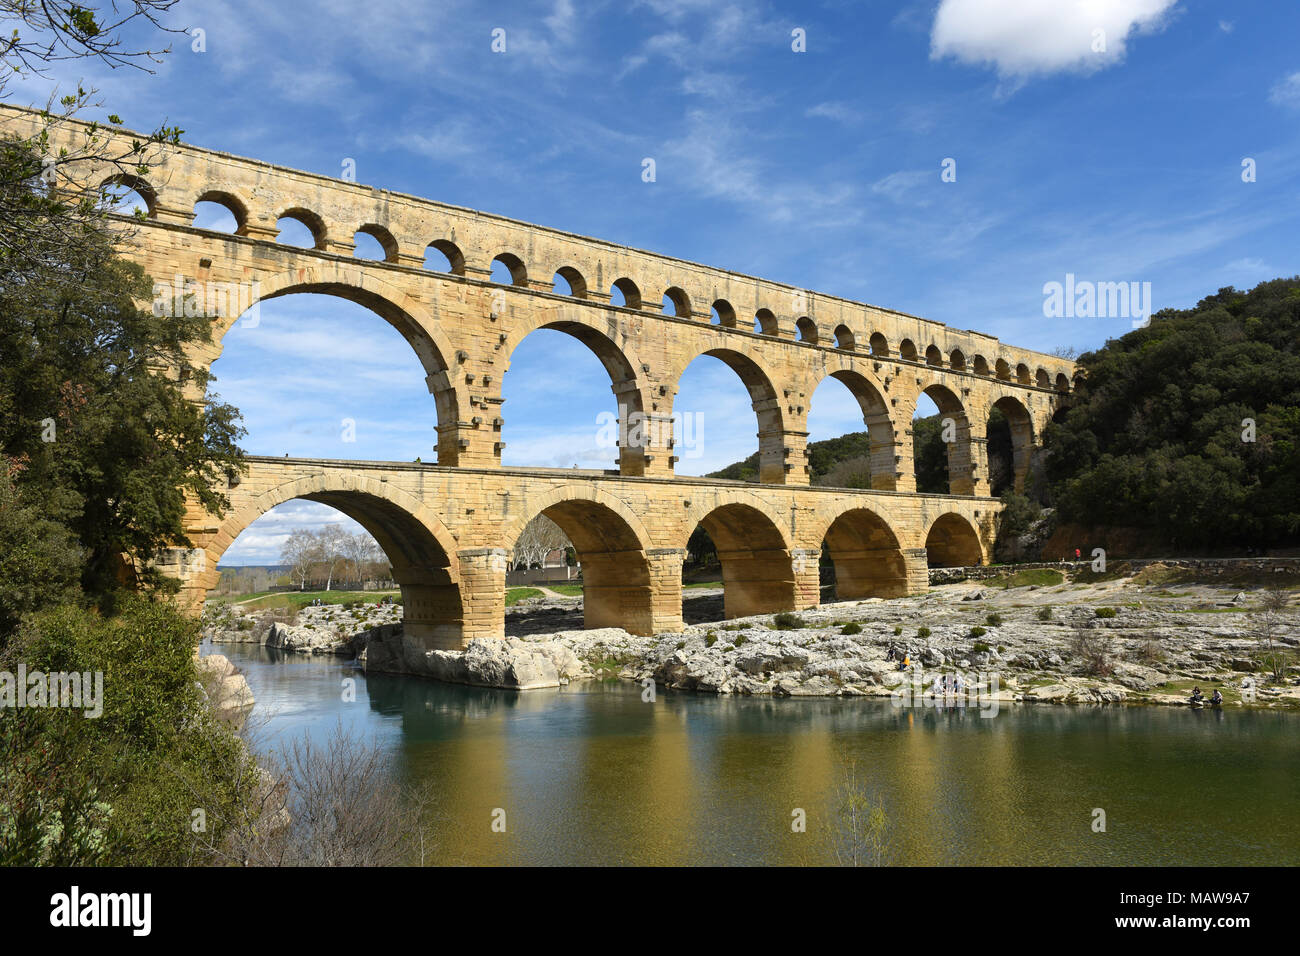 Pont du Gard römische Aquädukt in der Nähe von Nimes in Frankreich Stockfoto